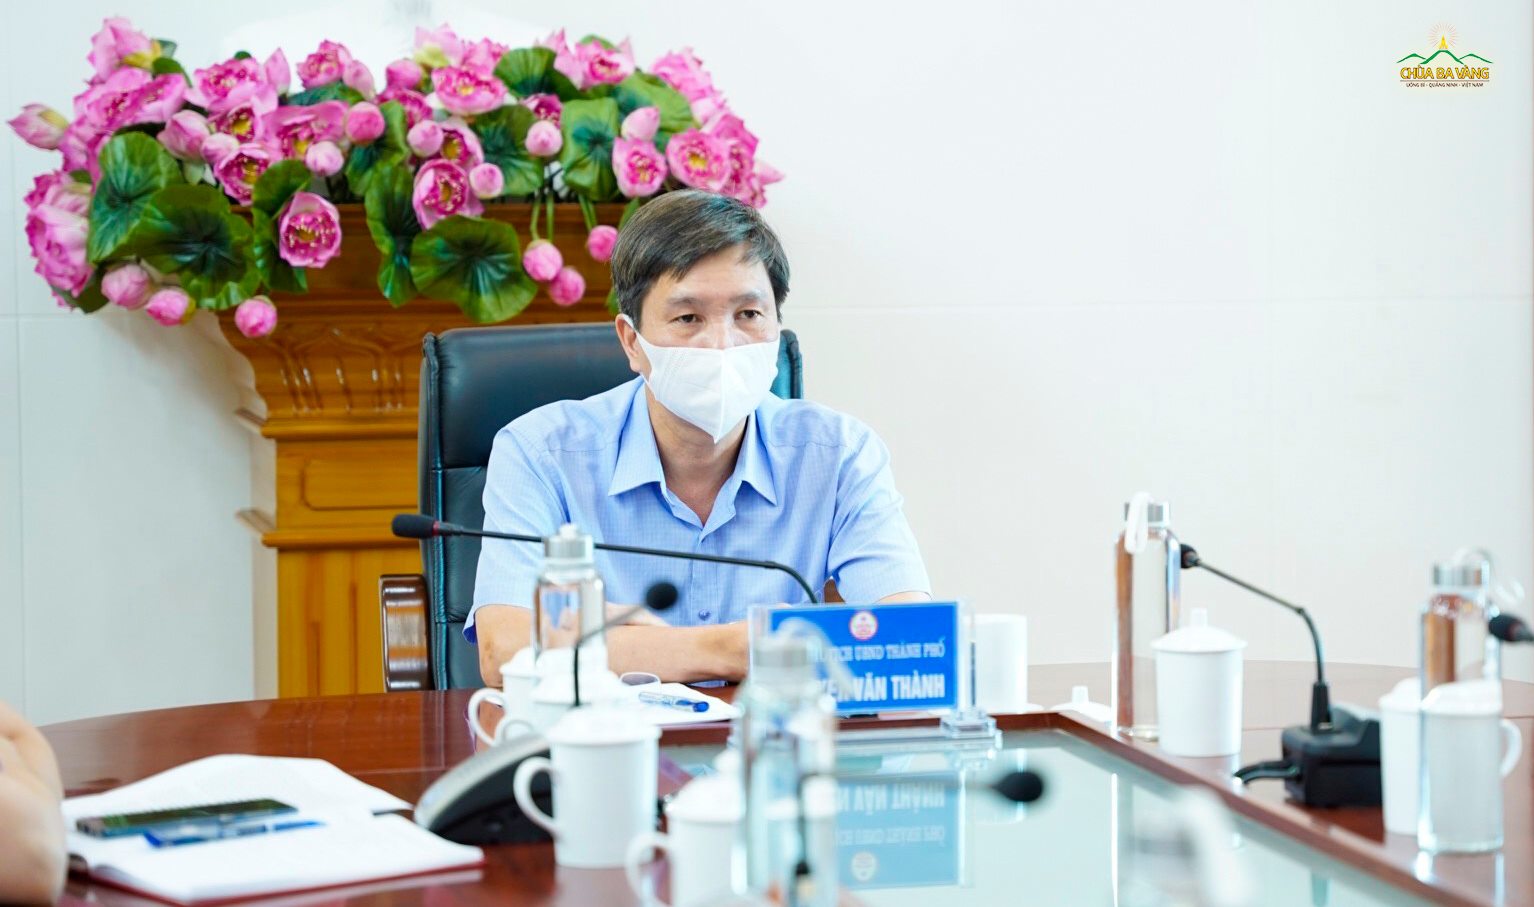 Phó Chủ tịch thường trực UBND Thành phố Uông Bí - ông Nguyễn Văn Thành (chủ trì cuộc họp tại điểm cầu thành phố Uông Bí)